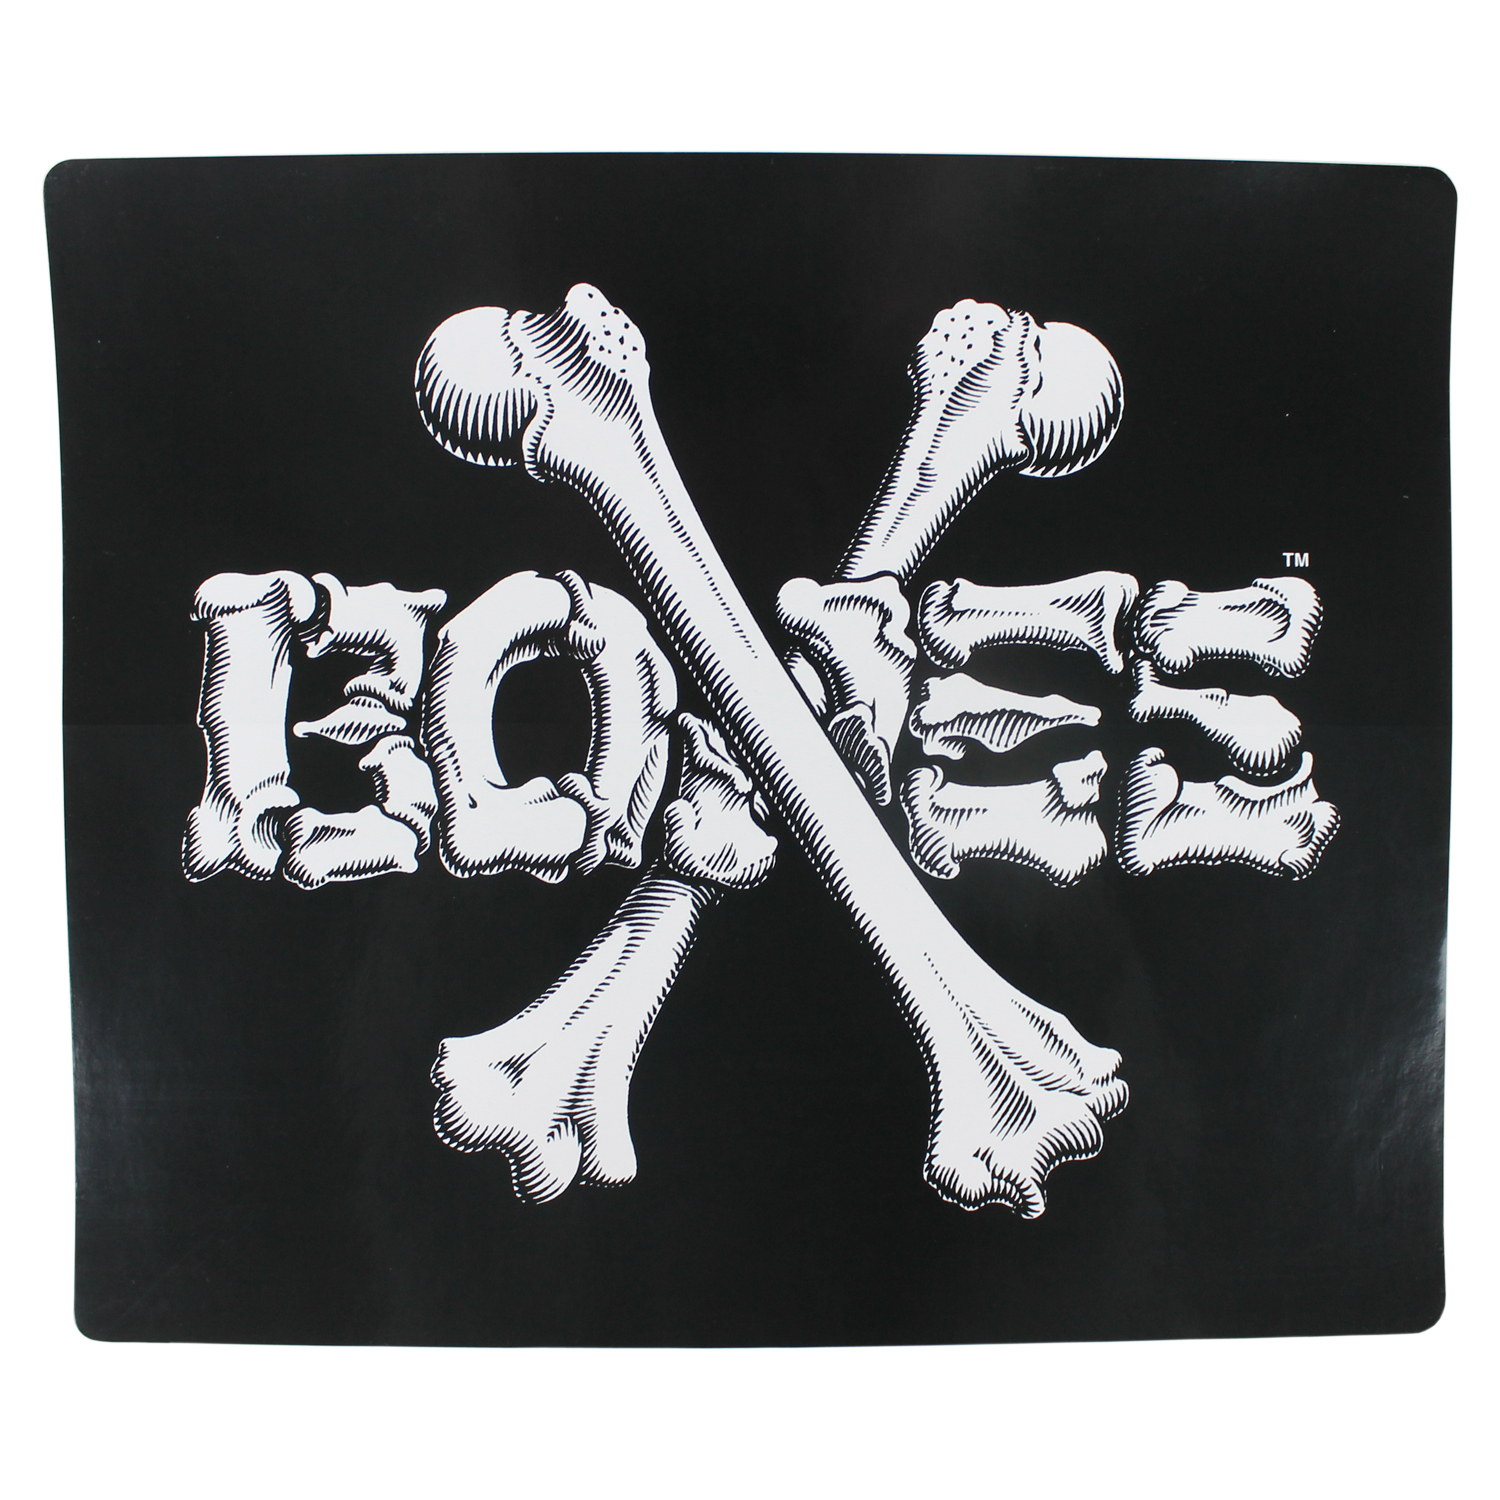 Le bones. Кость стикер. Стикер косточка. Наклейка Bones. Bones Wheels лого.